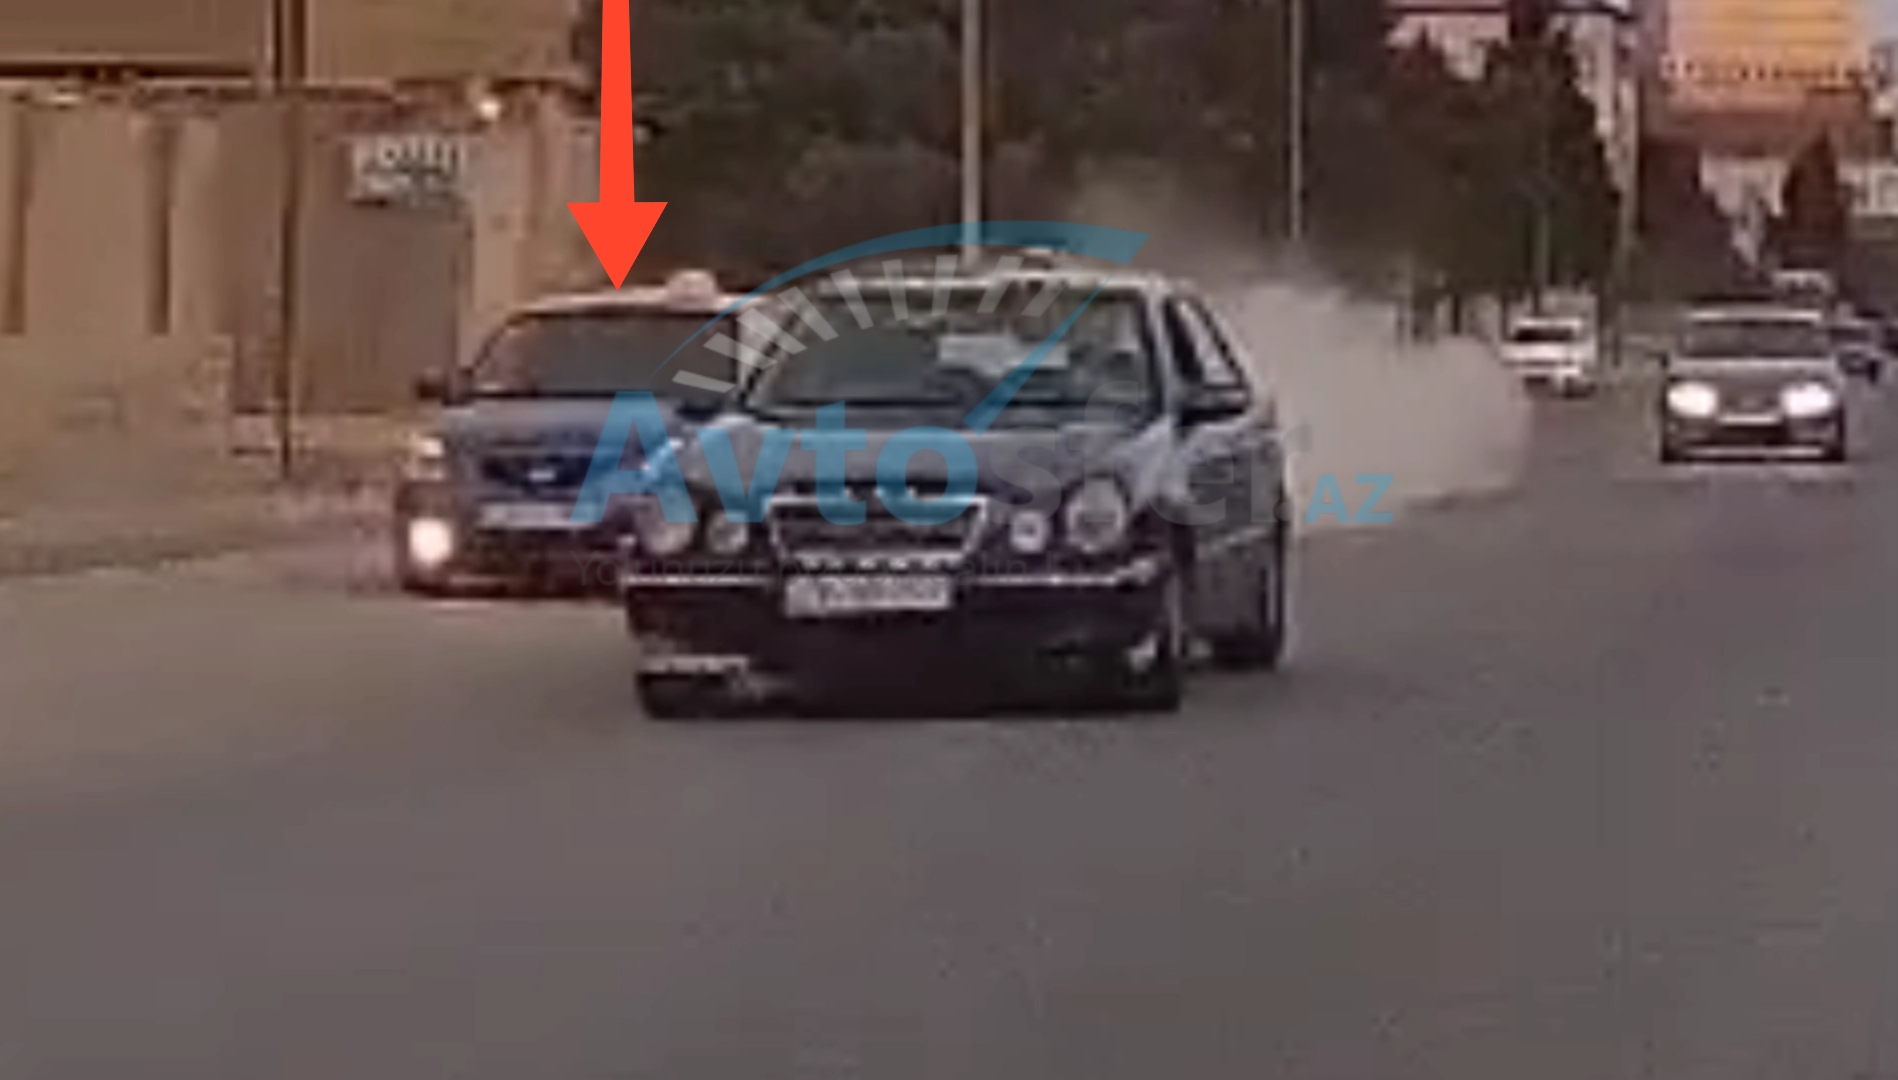 Bakıda yarışa çıxan taksi sürücüsü toz qoparıb görünüşü çətinləşdirdi - VİDEO